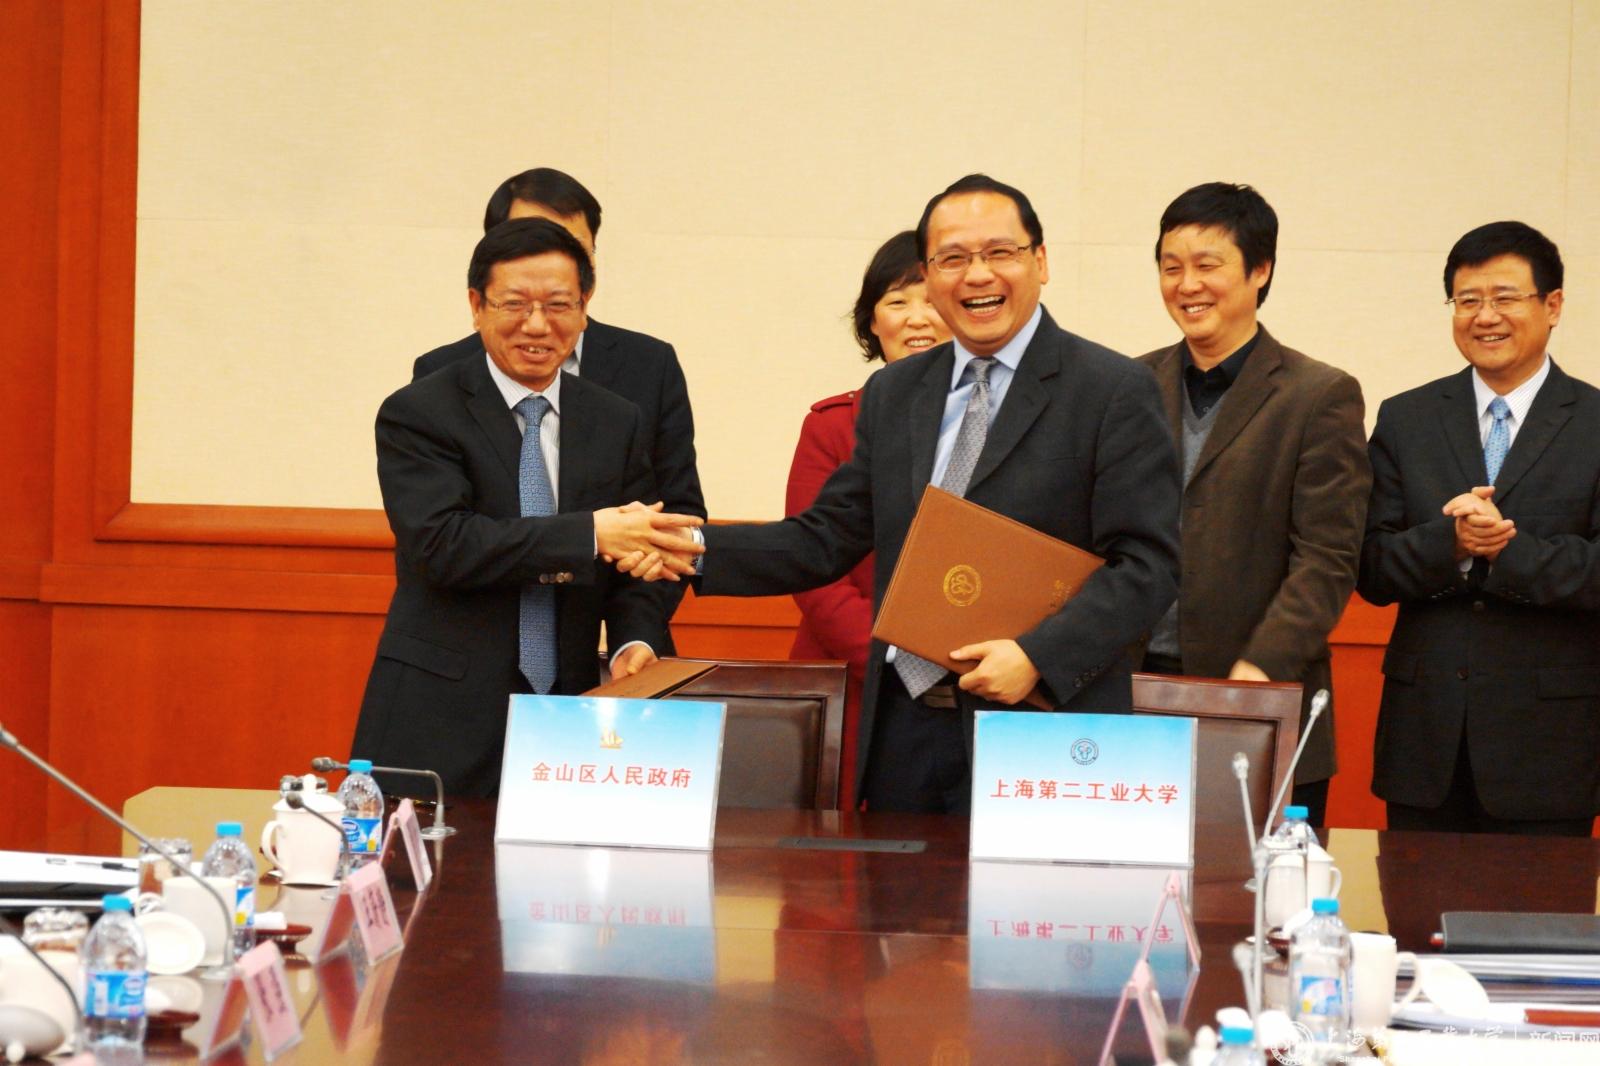 会议期间，俞涛校长和胡卫国区长分别代表上海第二工业大学和金山区人民政府签署了区校合作共建协议，与会领导、专家见证了签约仪式。